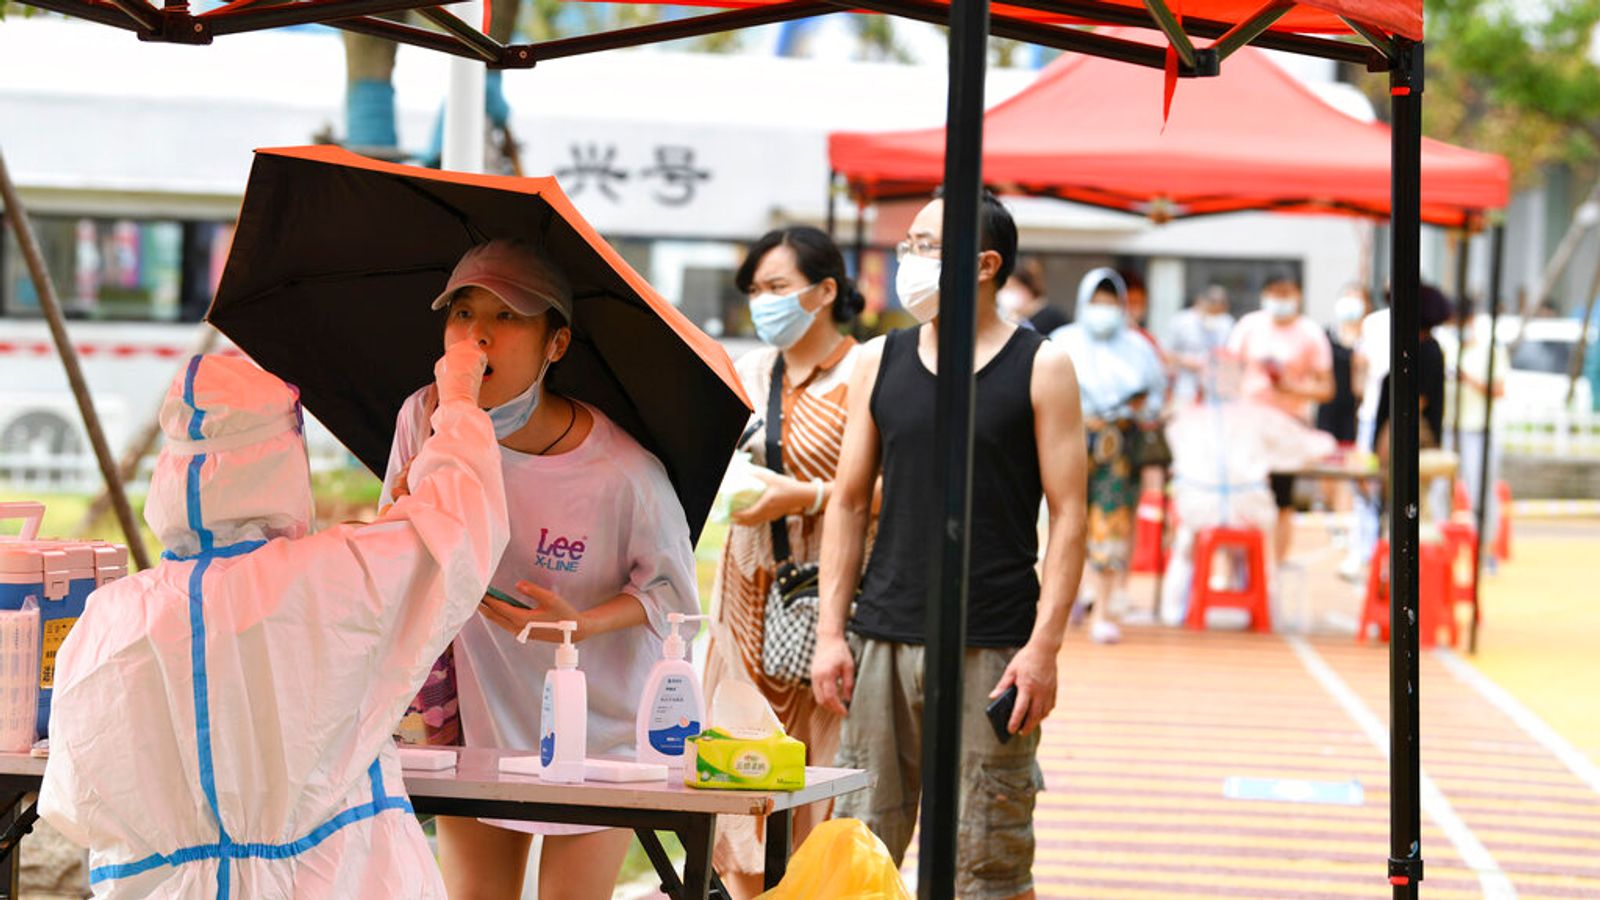 Rückschlag in China, nachdem die Behörden Häuser durchsuchten, um „keine Kontakte“ von Personen zu finden, die mit Coronavirus infiziert sind |  Weltnachrichten